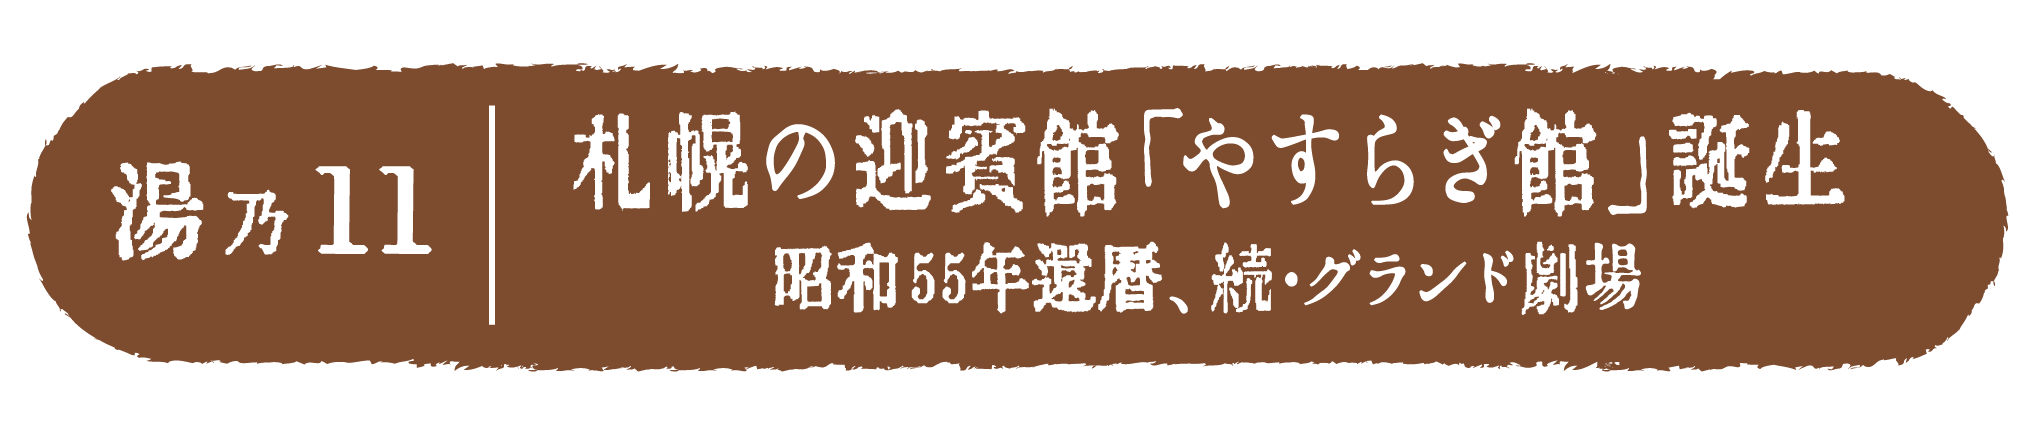 札幌の迎賓館「やすらぎ館」誕生　昭和55年還暦、糸売・グランド劇場